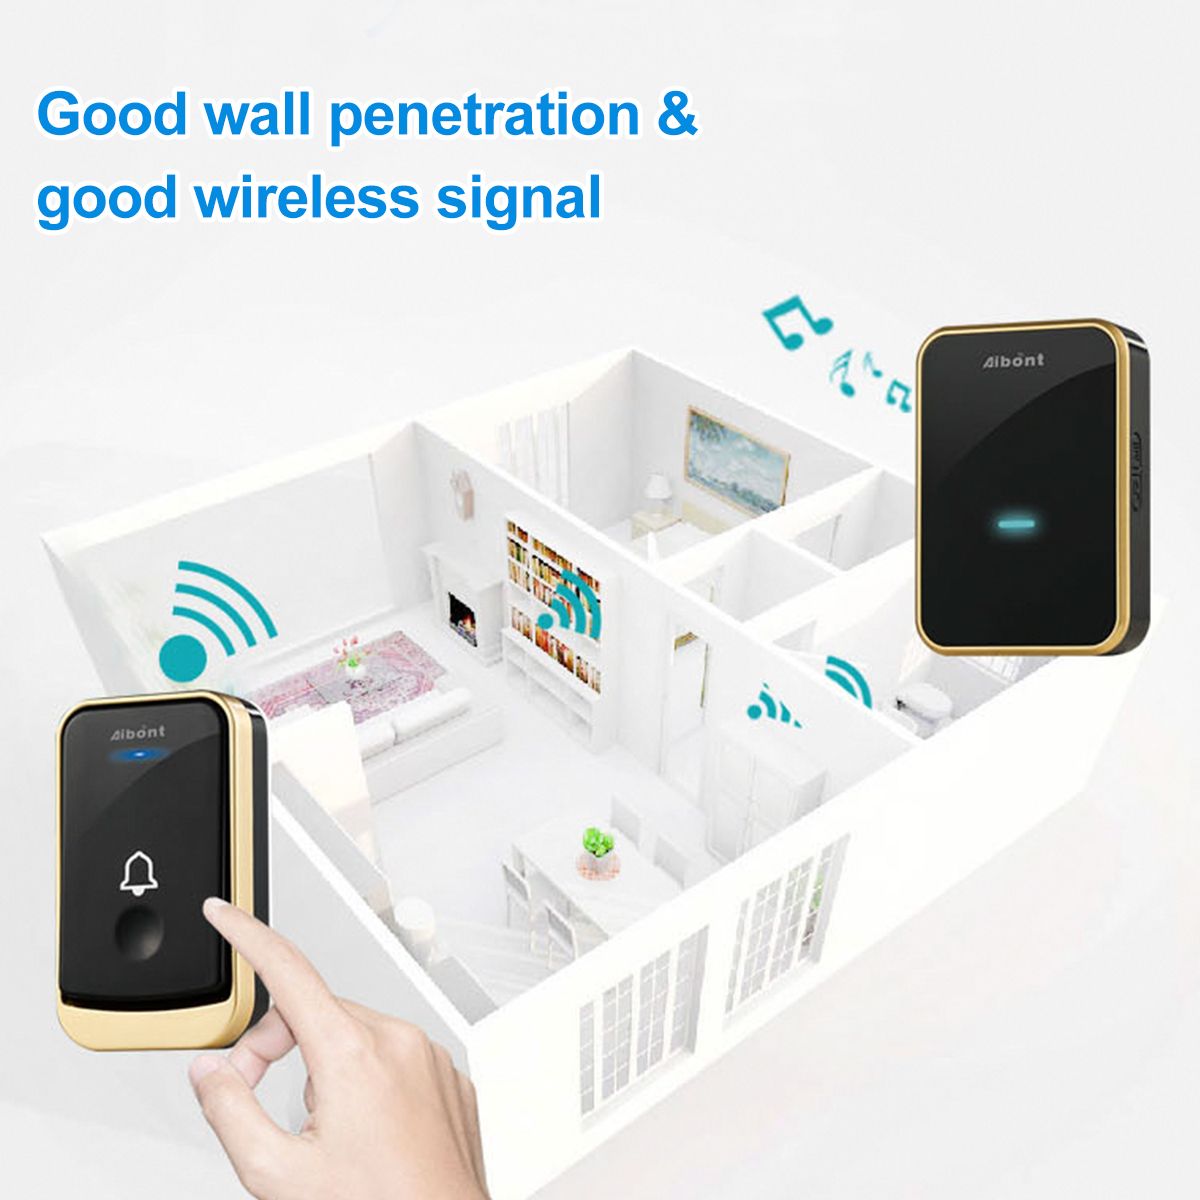 Smart-Wireless-Doorbell-45-Songs-Ringtones--200m-Transmission-Door-Bell-1729994